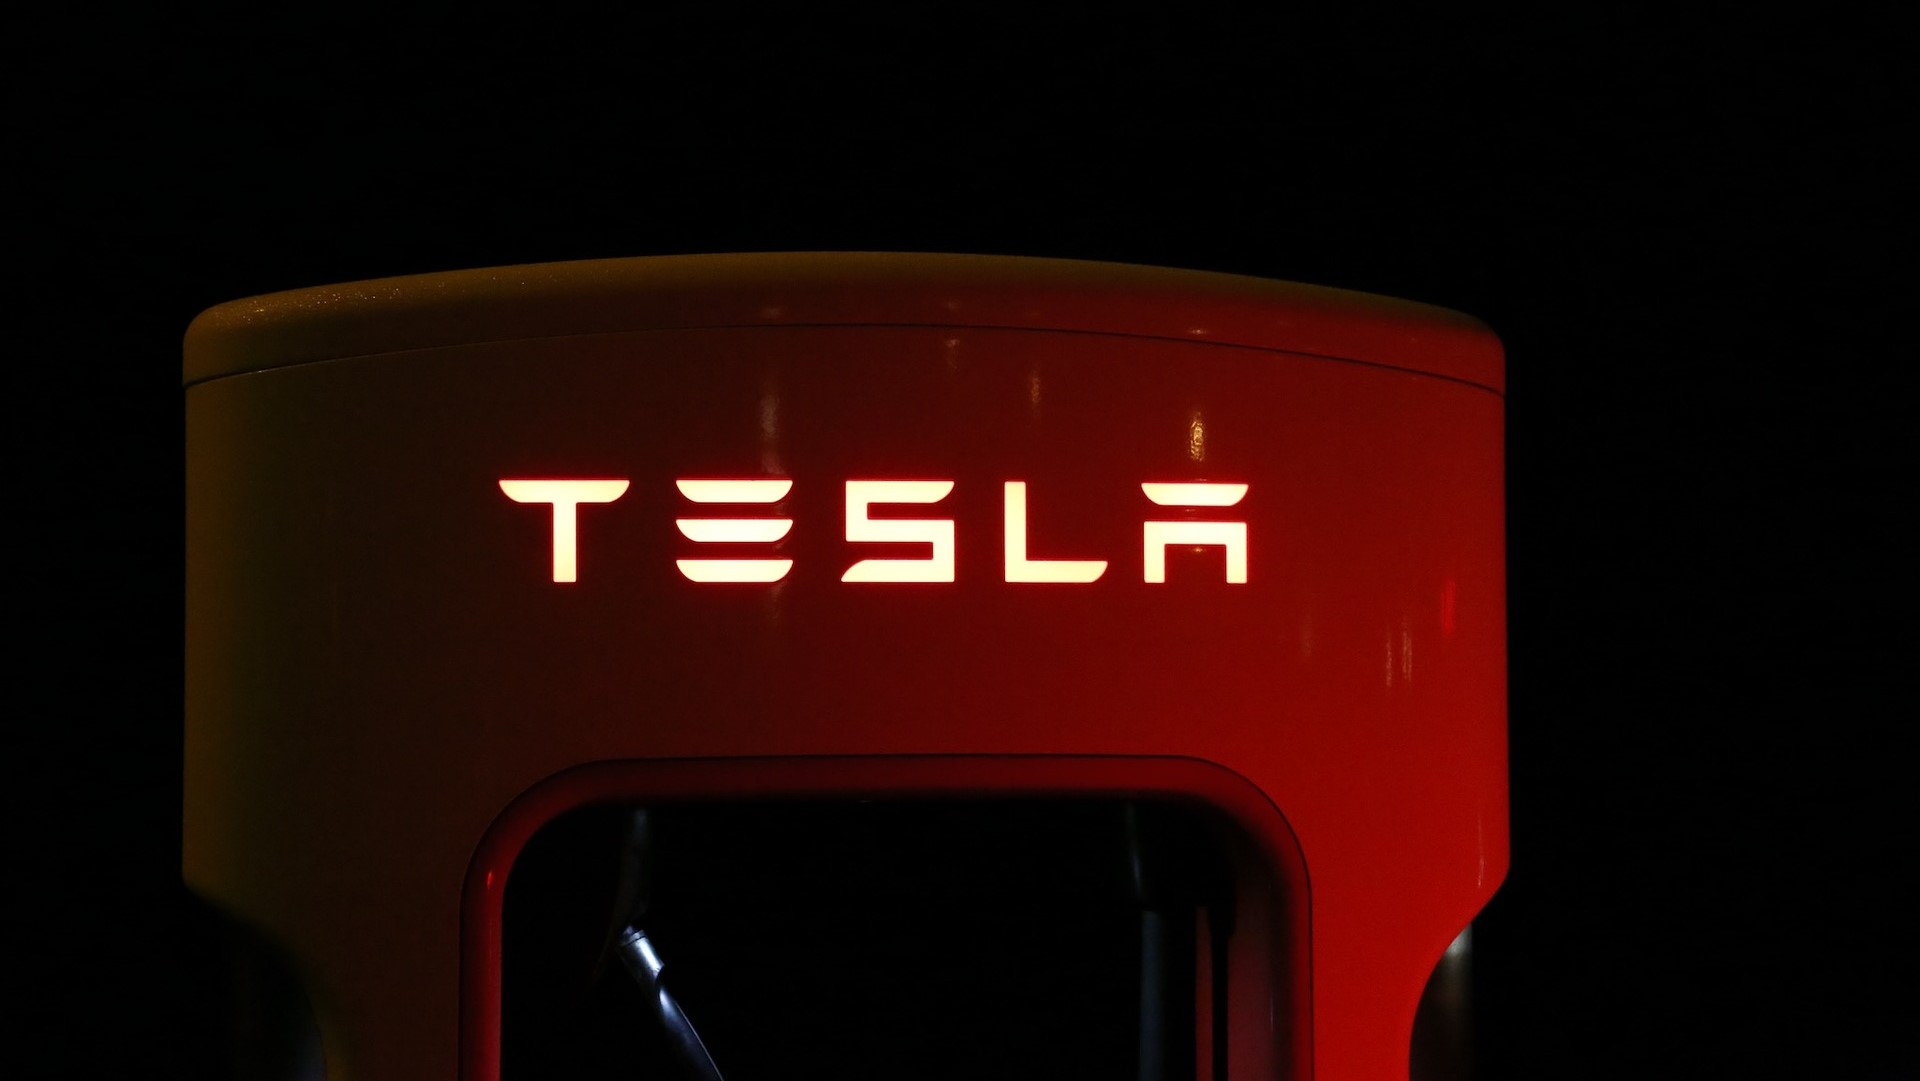 Tesla อาจได้รับอนุมัติเงินอุดหนุนโรงงานผลิตแบตเตอรี่ใกล้เบอร์ลินจากเยอรมนีสิ้นปีนี้